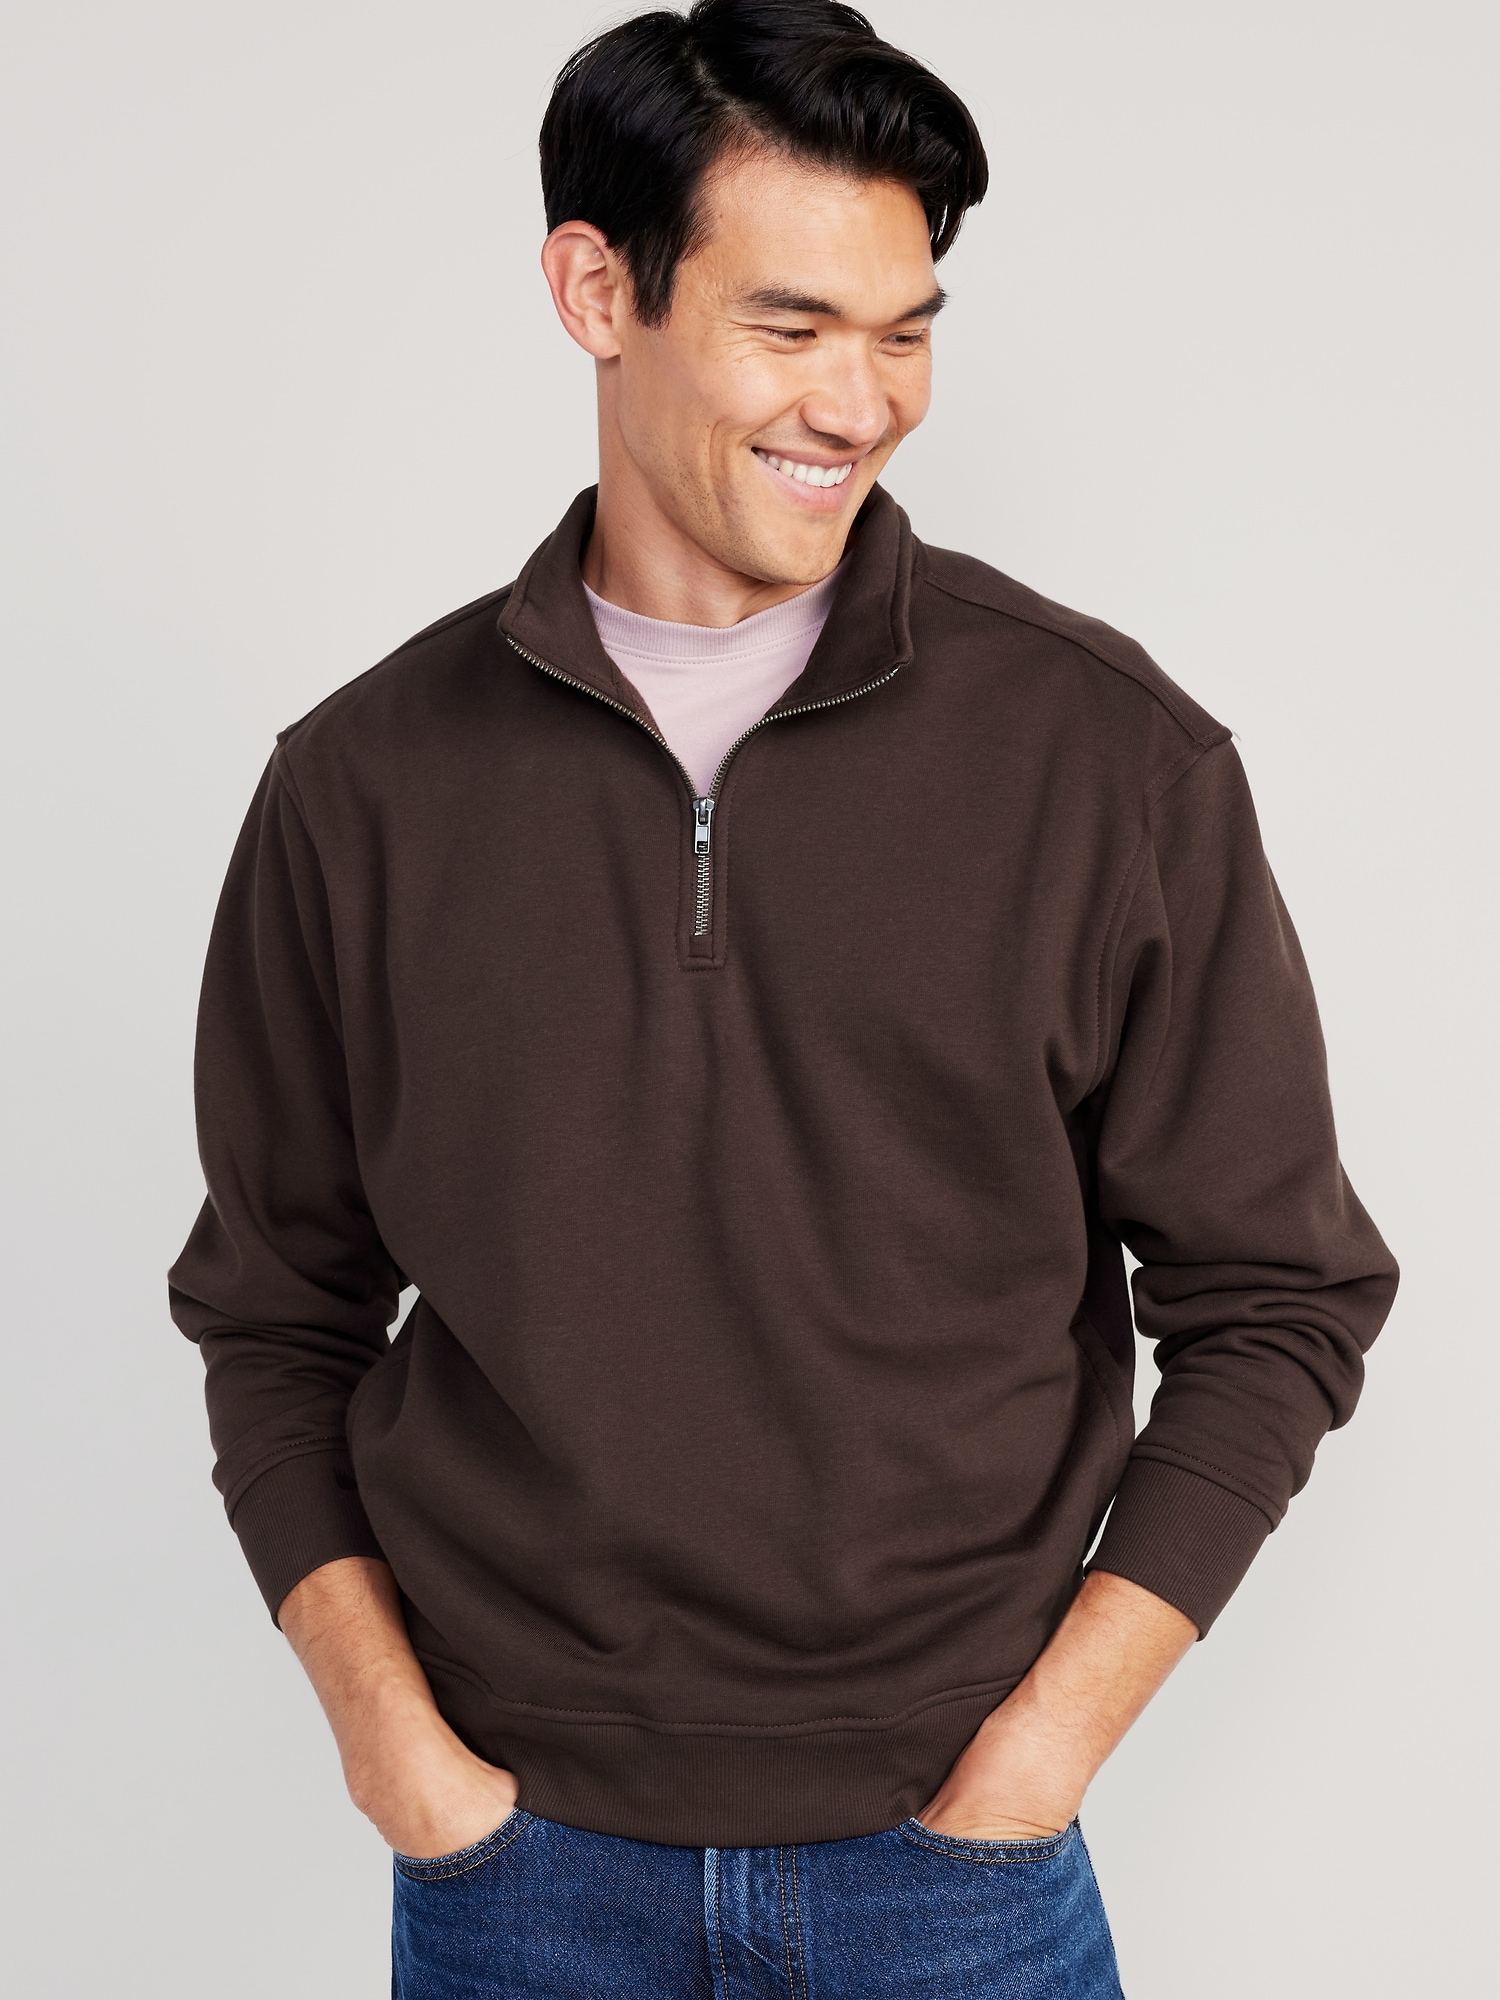 Oversized Quarter-Zip Mock-Neck Sweatshirt for Men | Old Navy